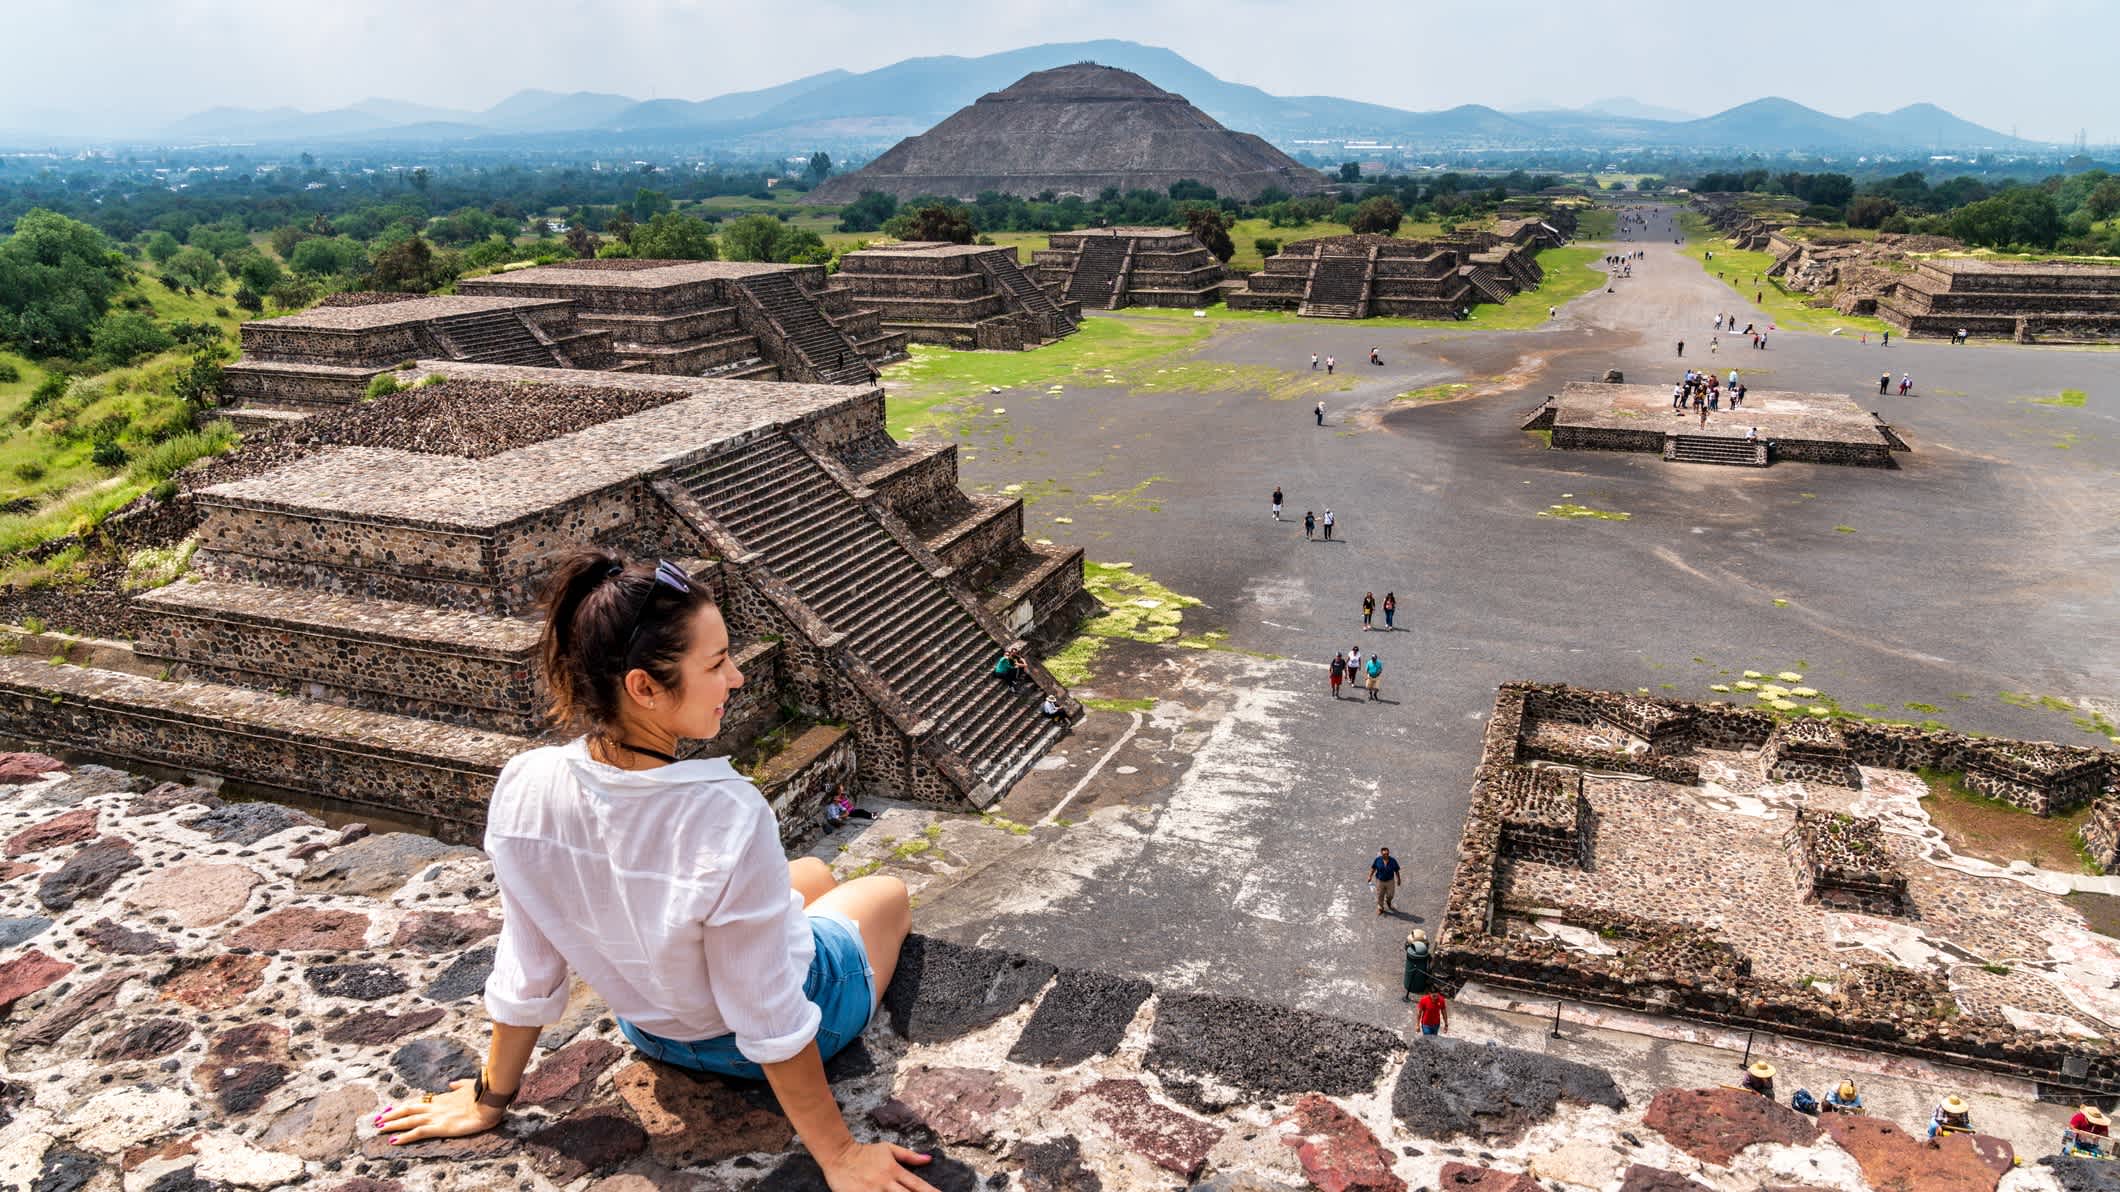 Une femme visite les pyramides de Teotihuacan au Mexique.

